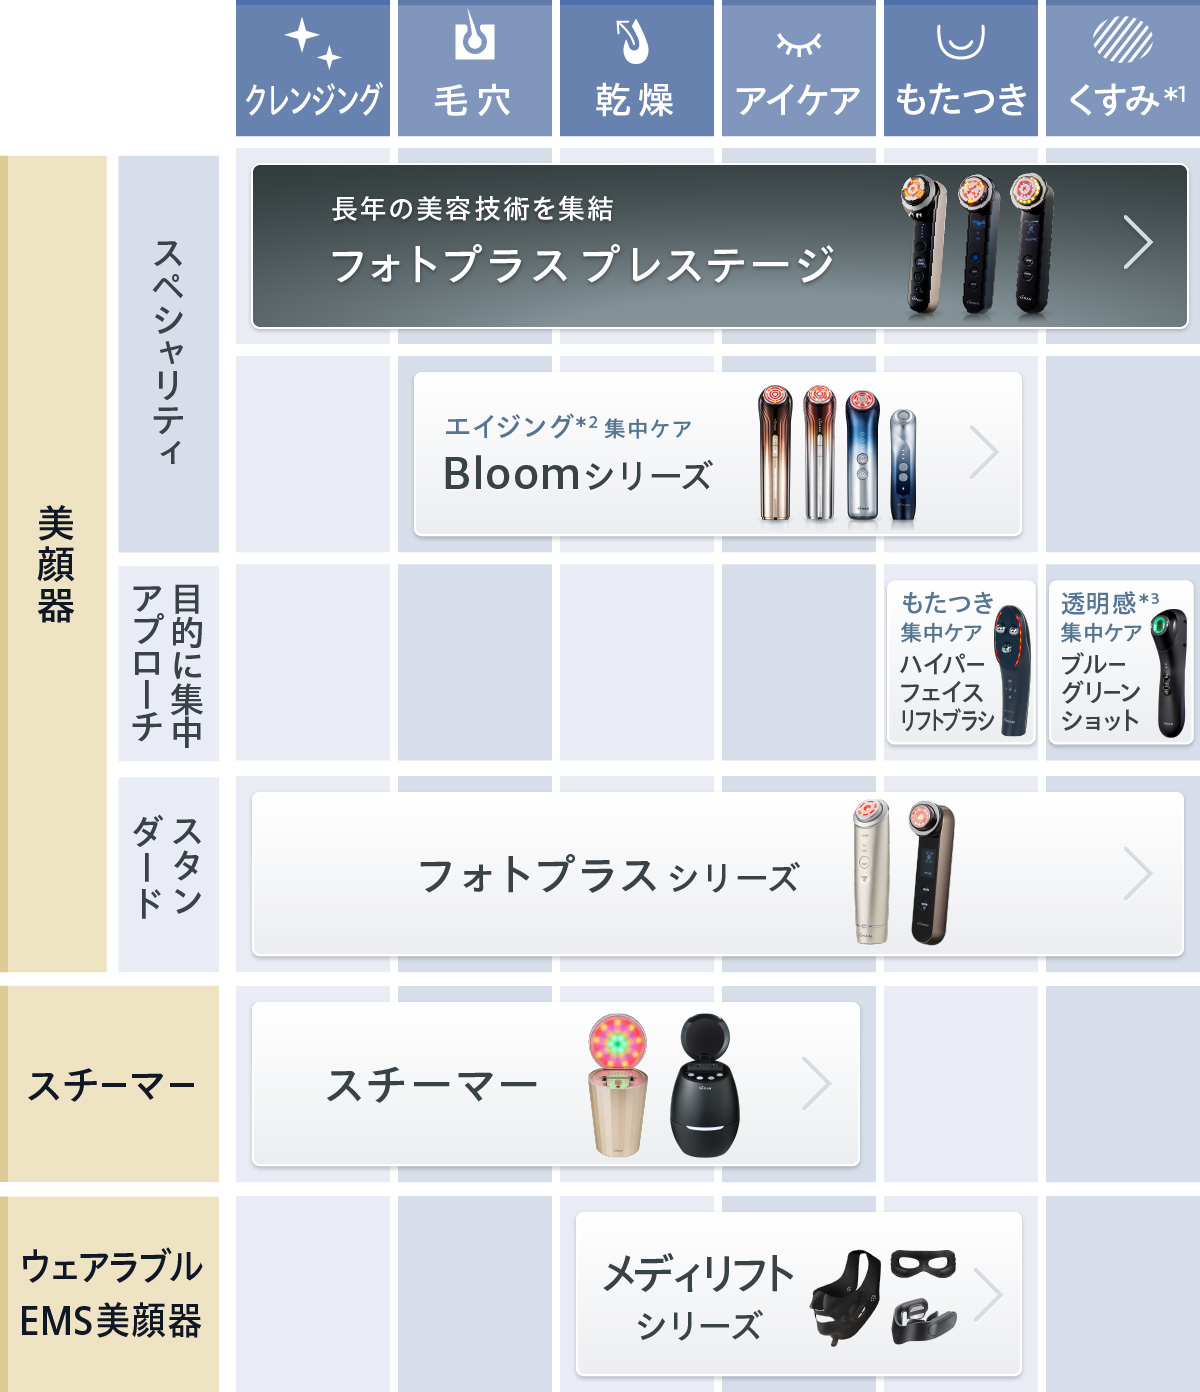 美顔器比較表 | YA-MAN TOKYO JAPAN公式ブランドサイト | ヤーマン株式会社